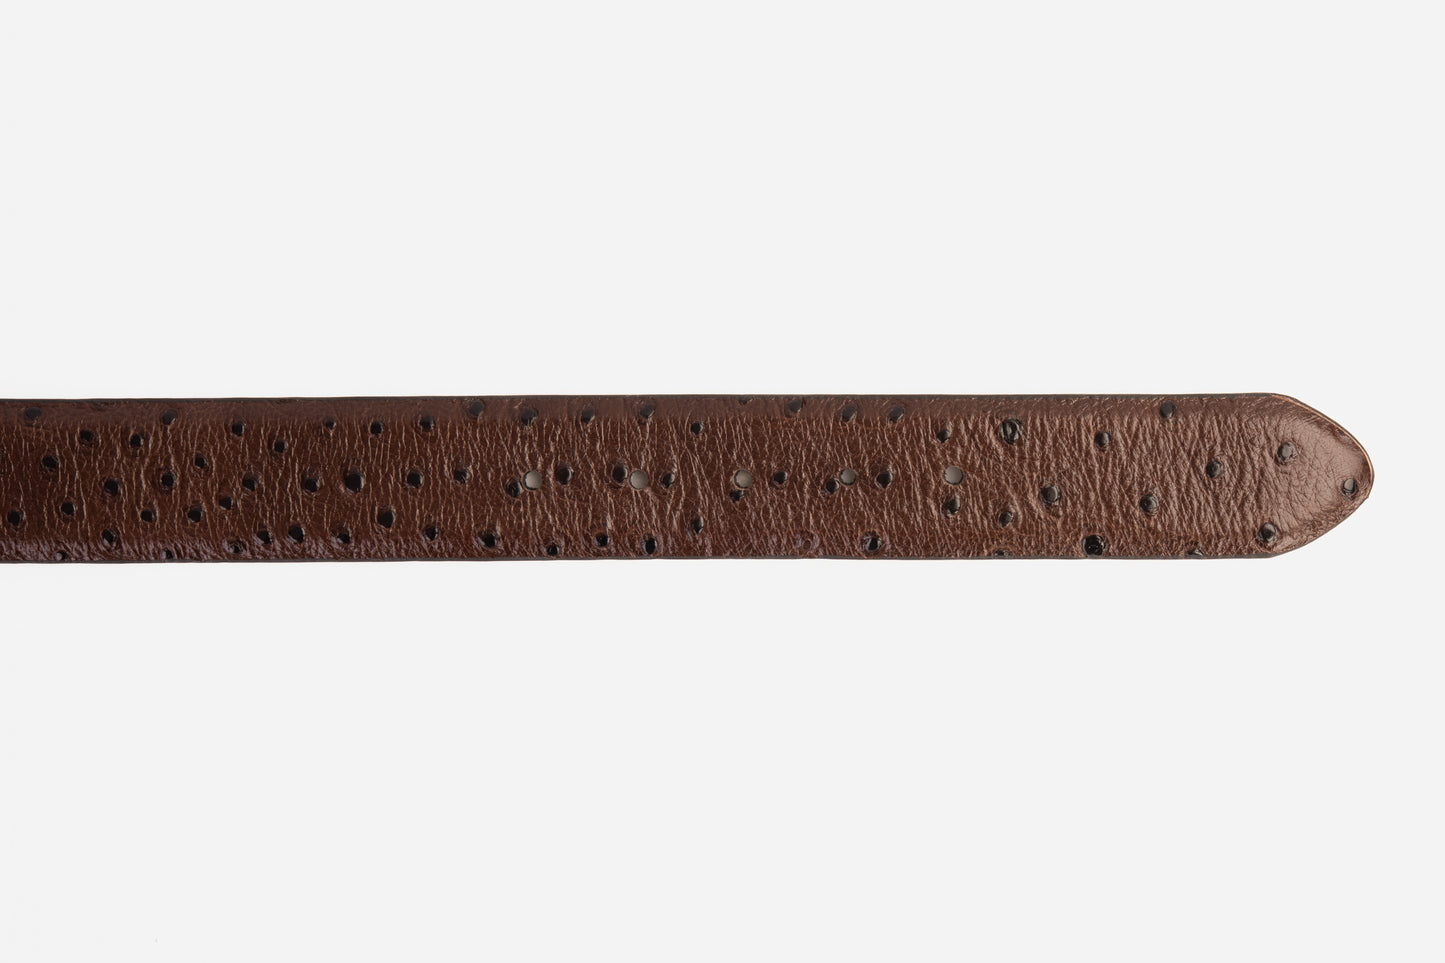 The Monterrey Brown Leather Belt